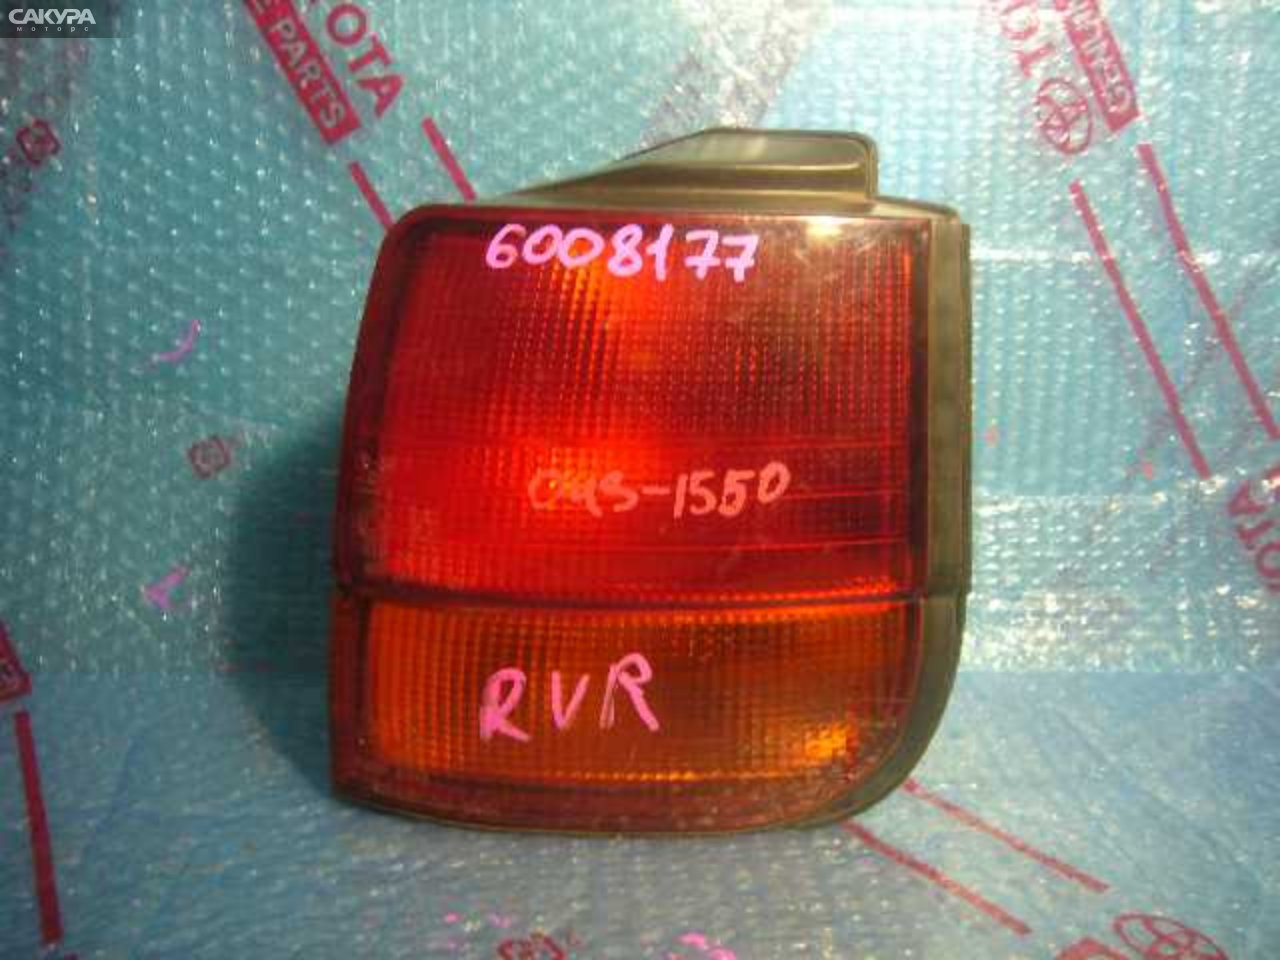 Фонарь стоп-сигнала правый Mitsubishi RVR N23W 043-1550: купить в Сакура Кемерово.